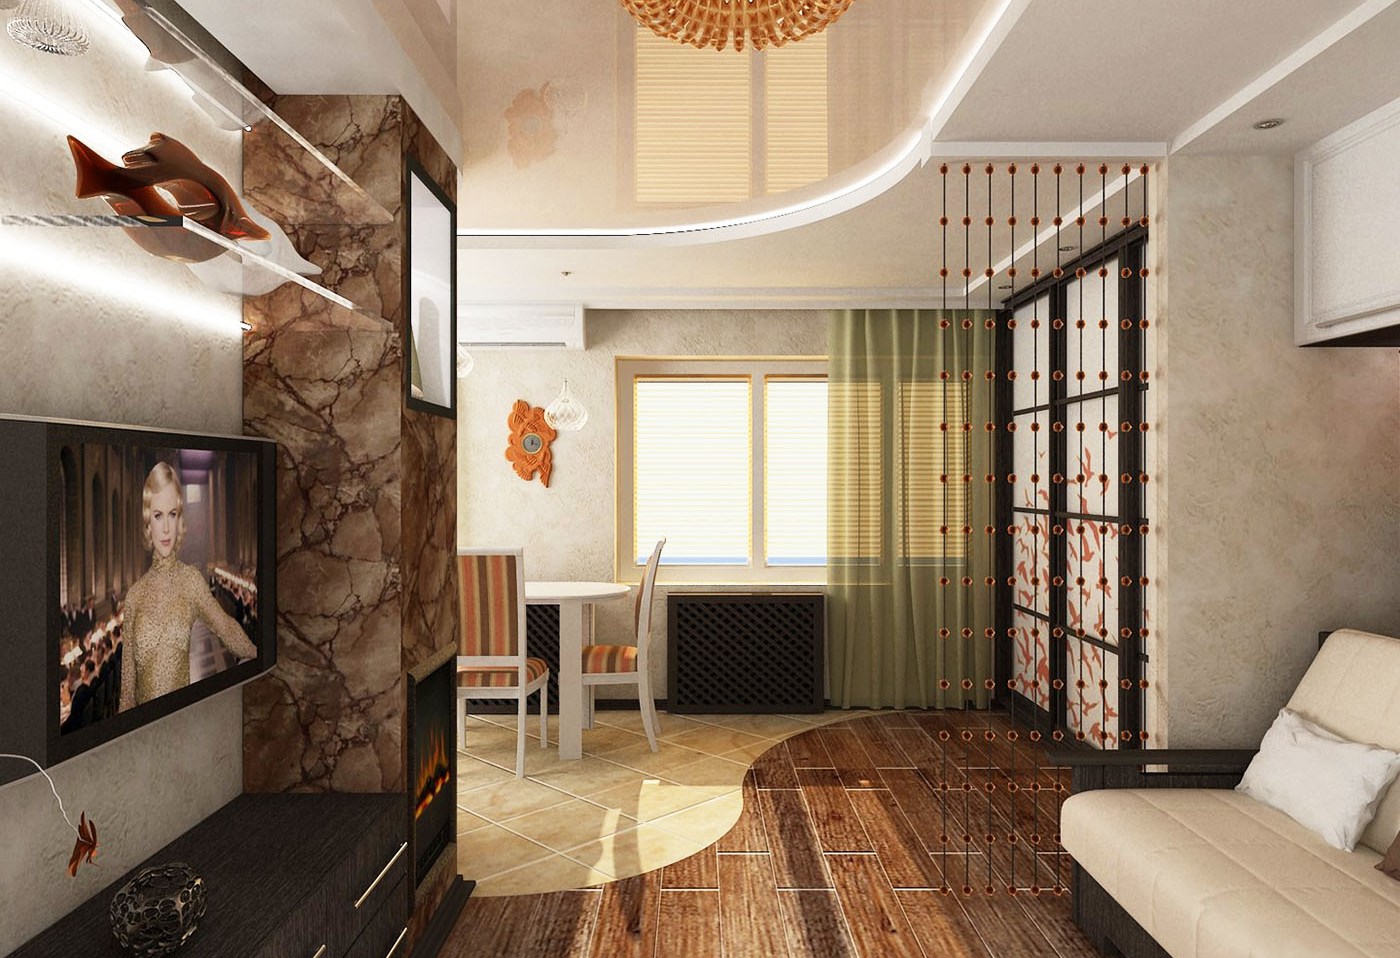 Перепланировку можно совместить с изменением дизайна помещения, его интерьера.